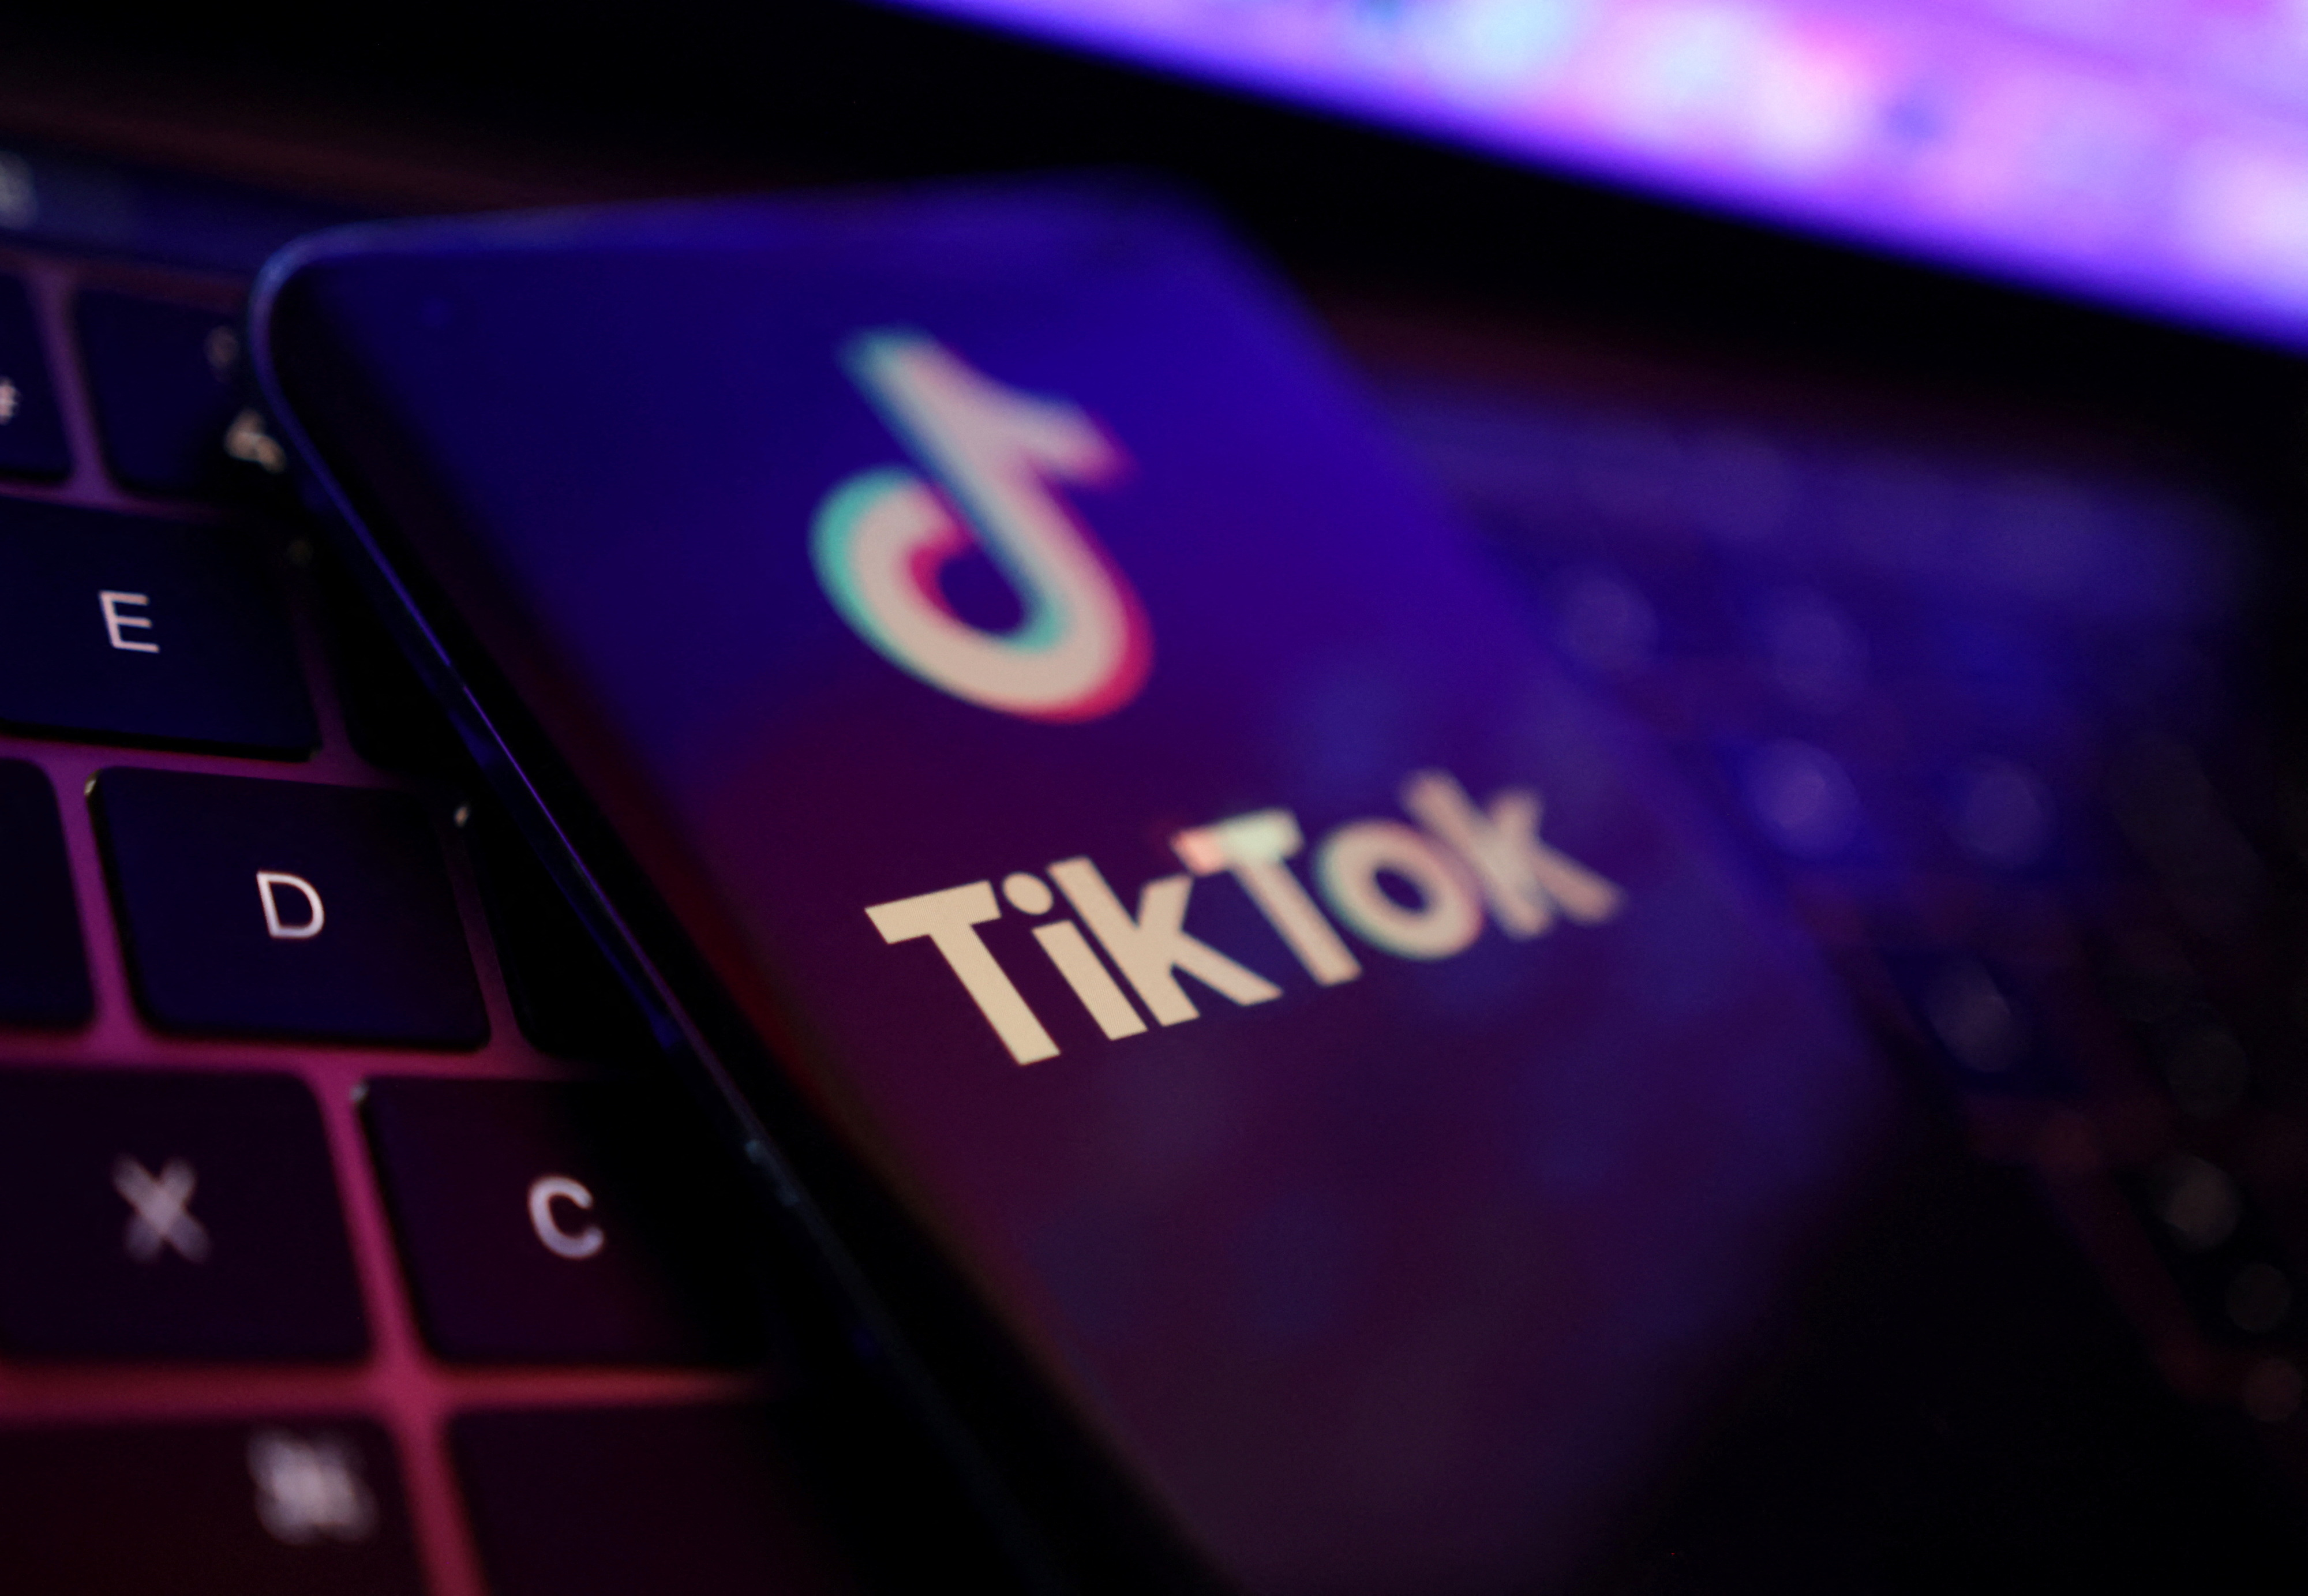 La red más usada fue TikTok, utilizada por el 89% de los niños. Un 57% aseguró acudir a Instagram, el 17% utilizó el foro Reddit y menos del 2% accedía a Facebook (REUTERS)